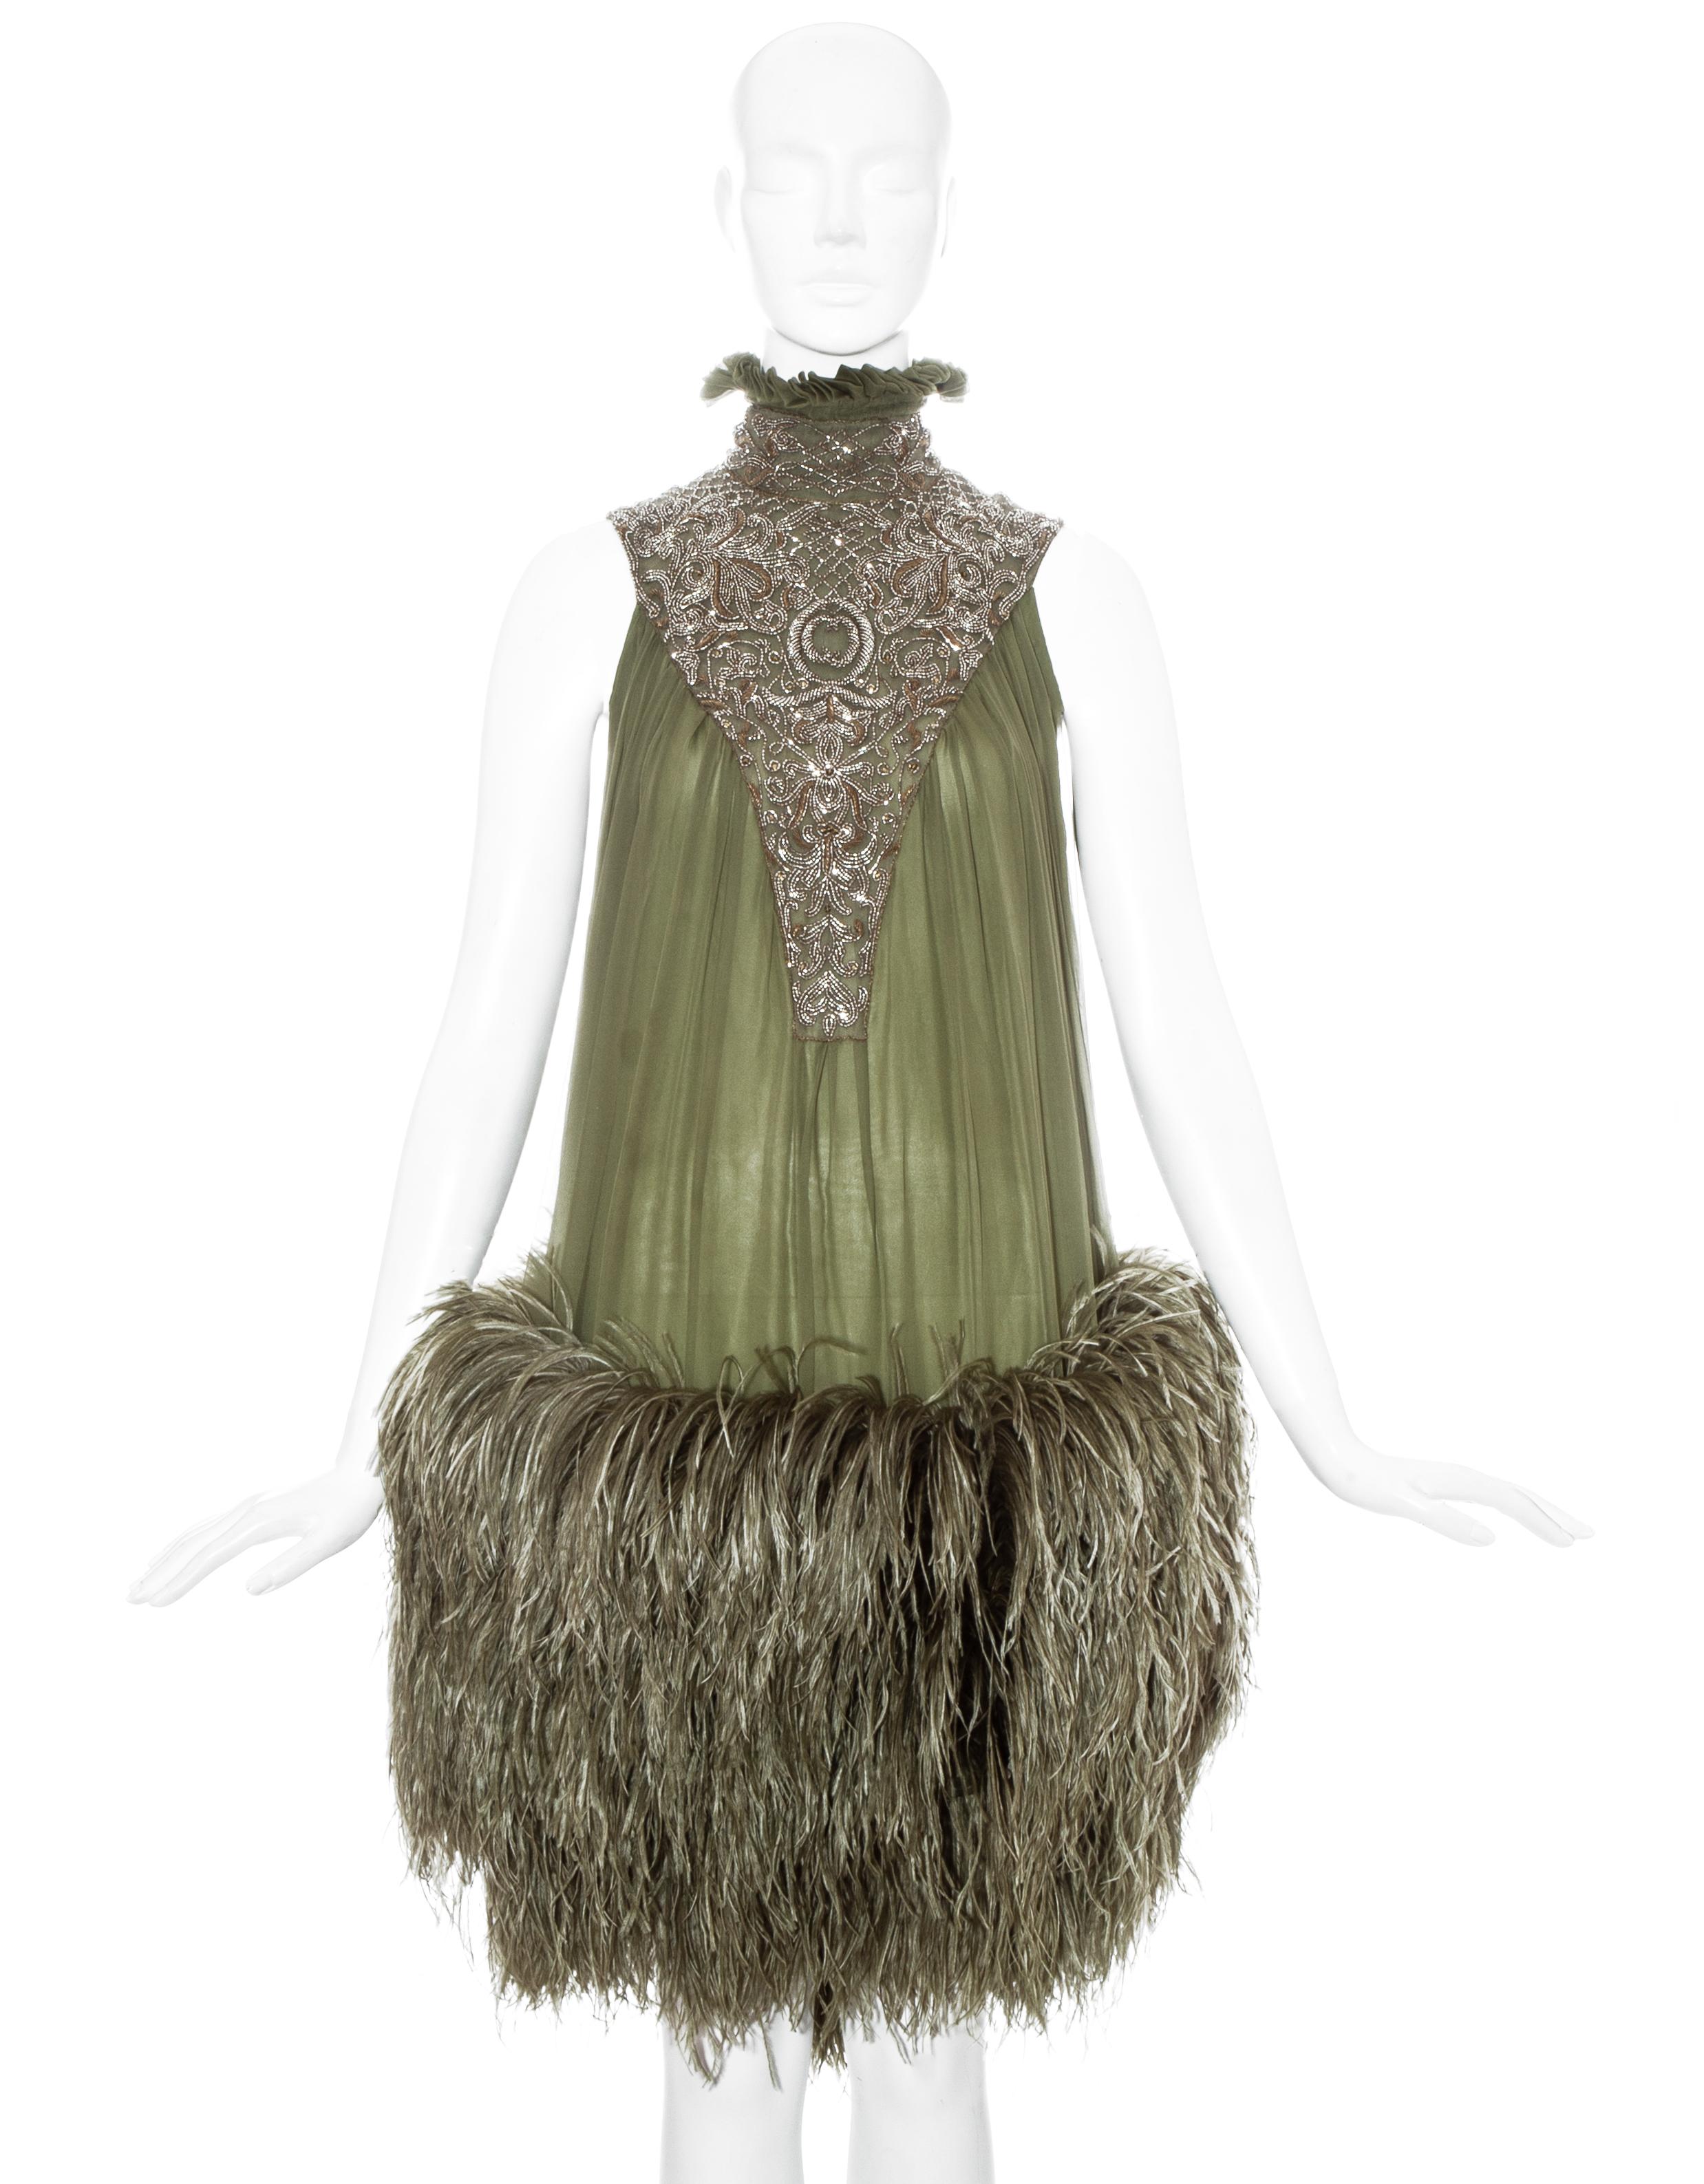 Alexander McQueen green silk chiffon evening dress with ostrich feather skirt, hand-sewn gold bead embellishment and high ruffled collar.

Fall-Winter 2006 